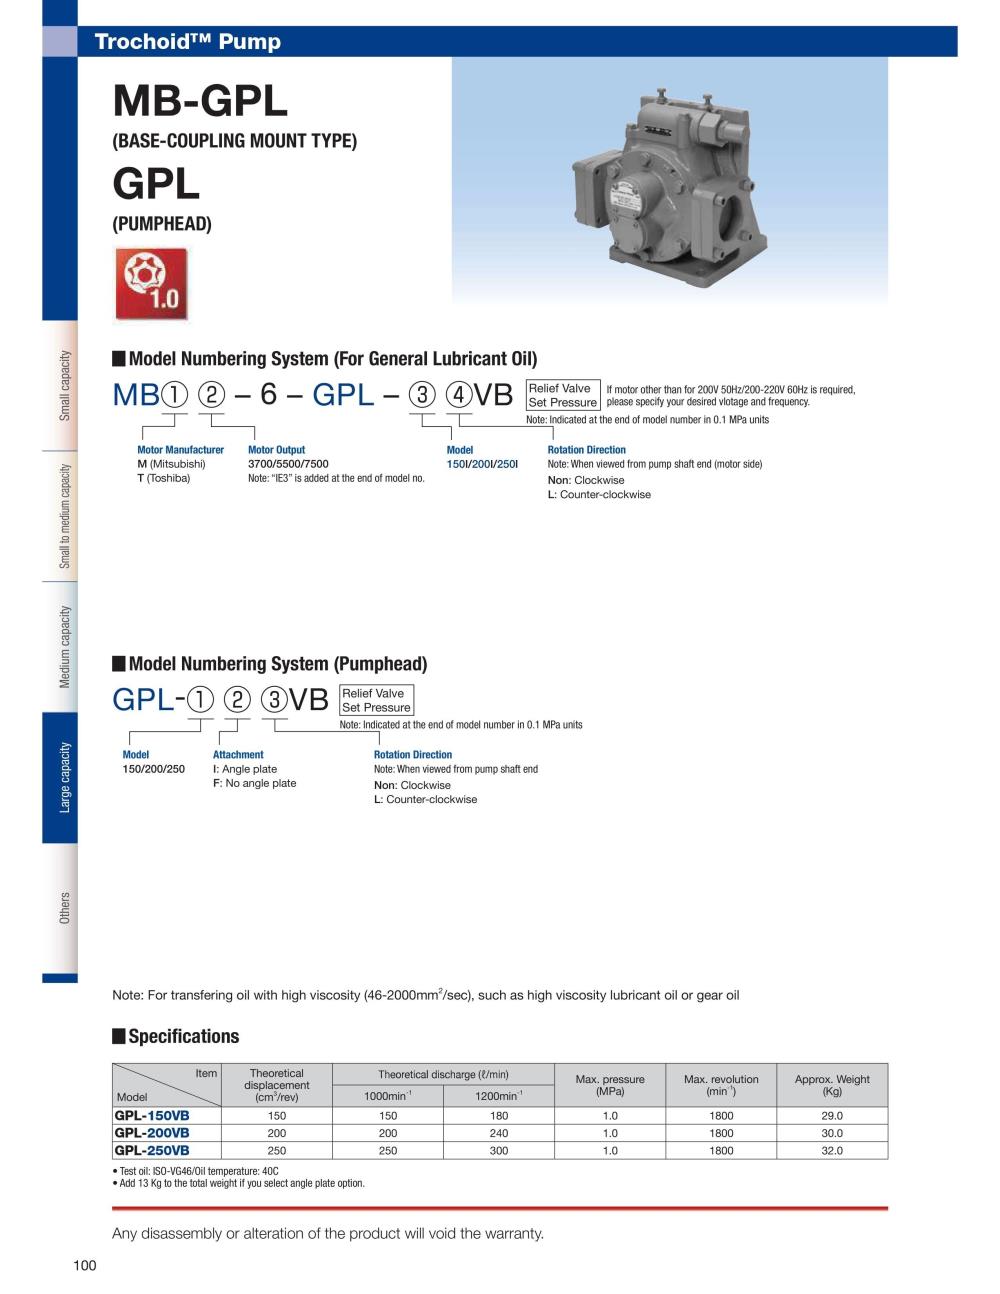 NOP Oil Pump TOP-MBT7500-6-GPL-IVB IE3 Series